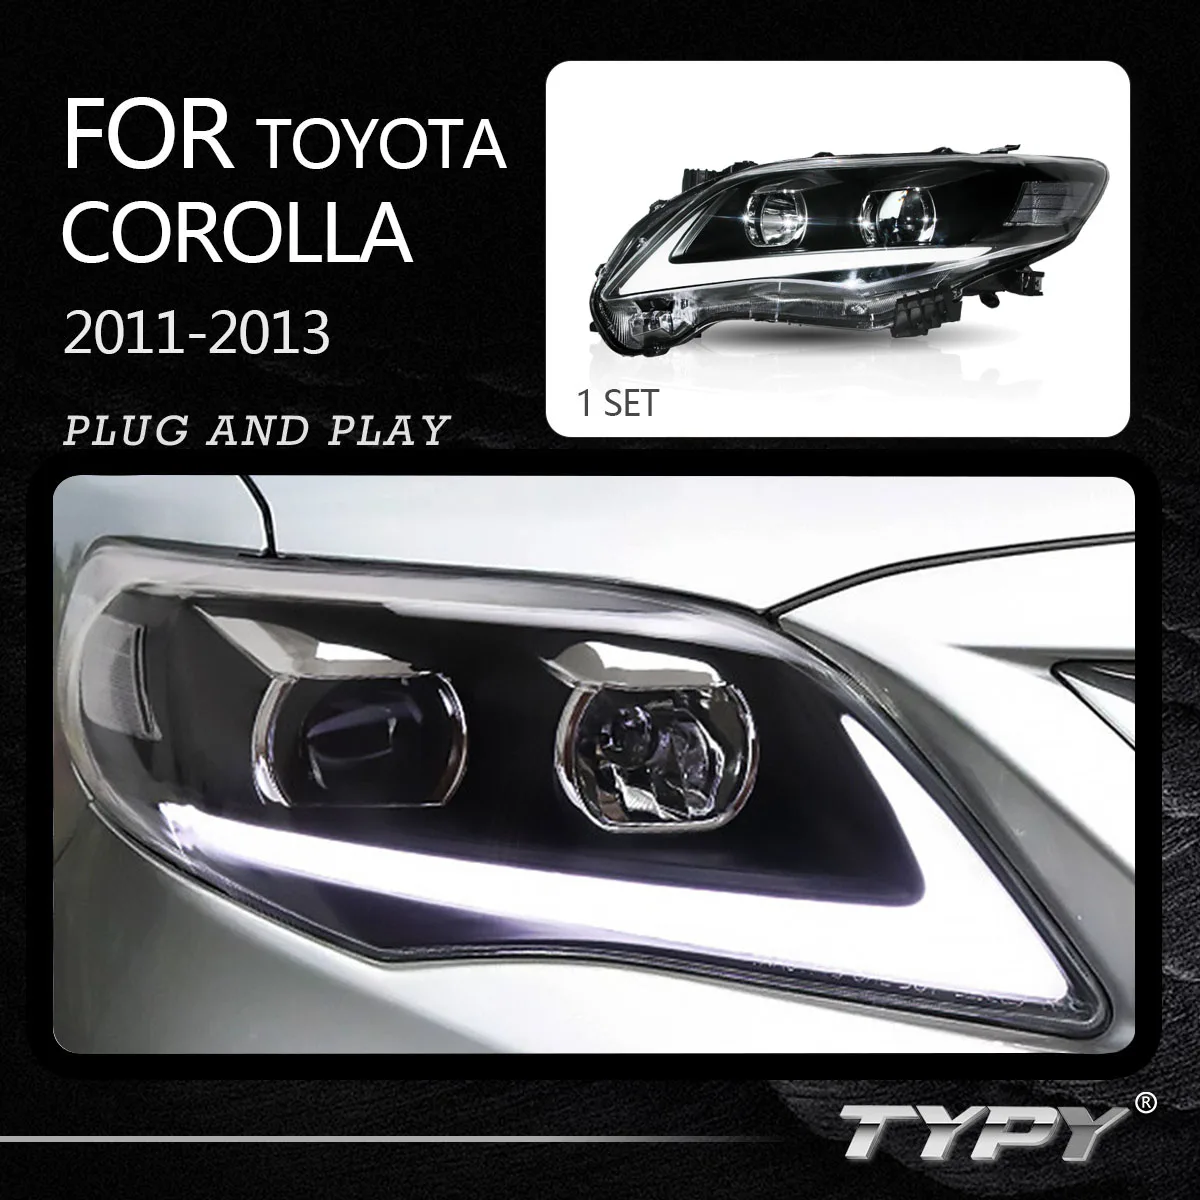 

Передняя фара головного света с дневными ходовыми огнями и указателем поворота для Toyota Corolla светодиодный, фара 2011 2012 2013